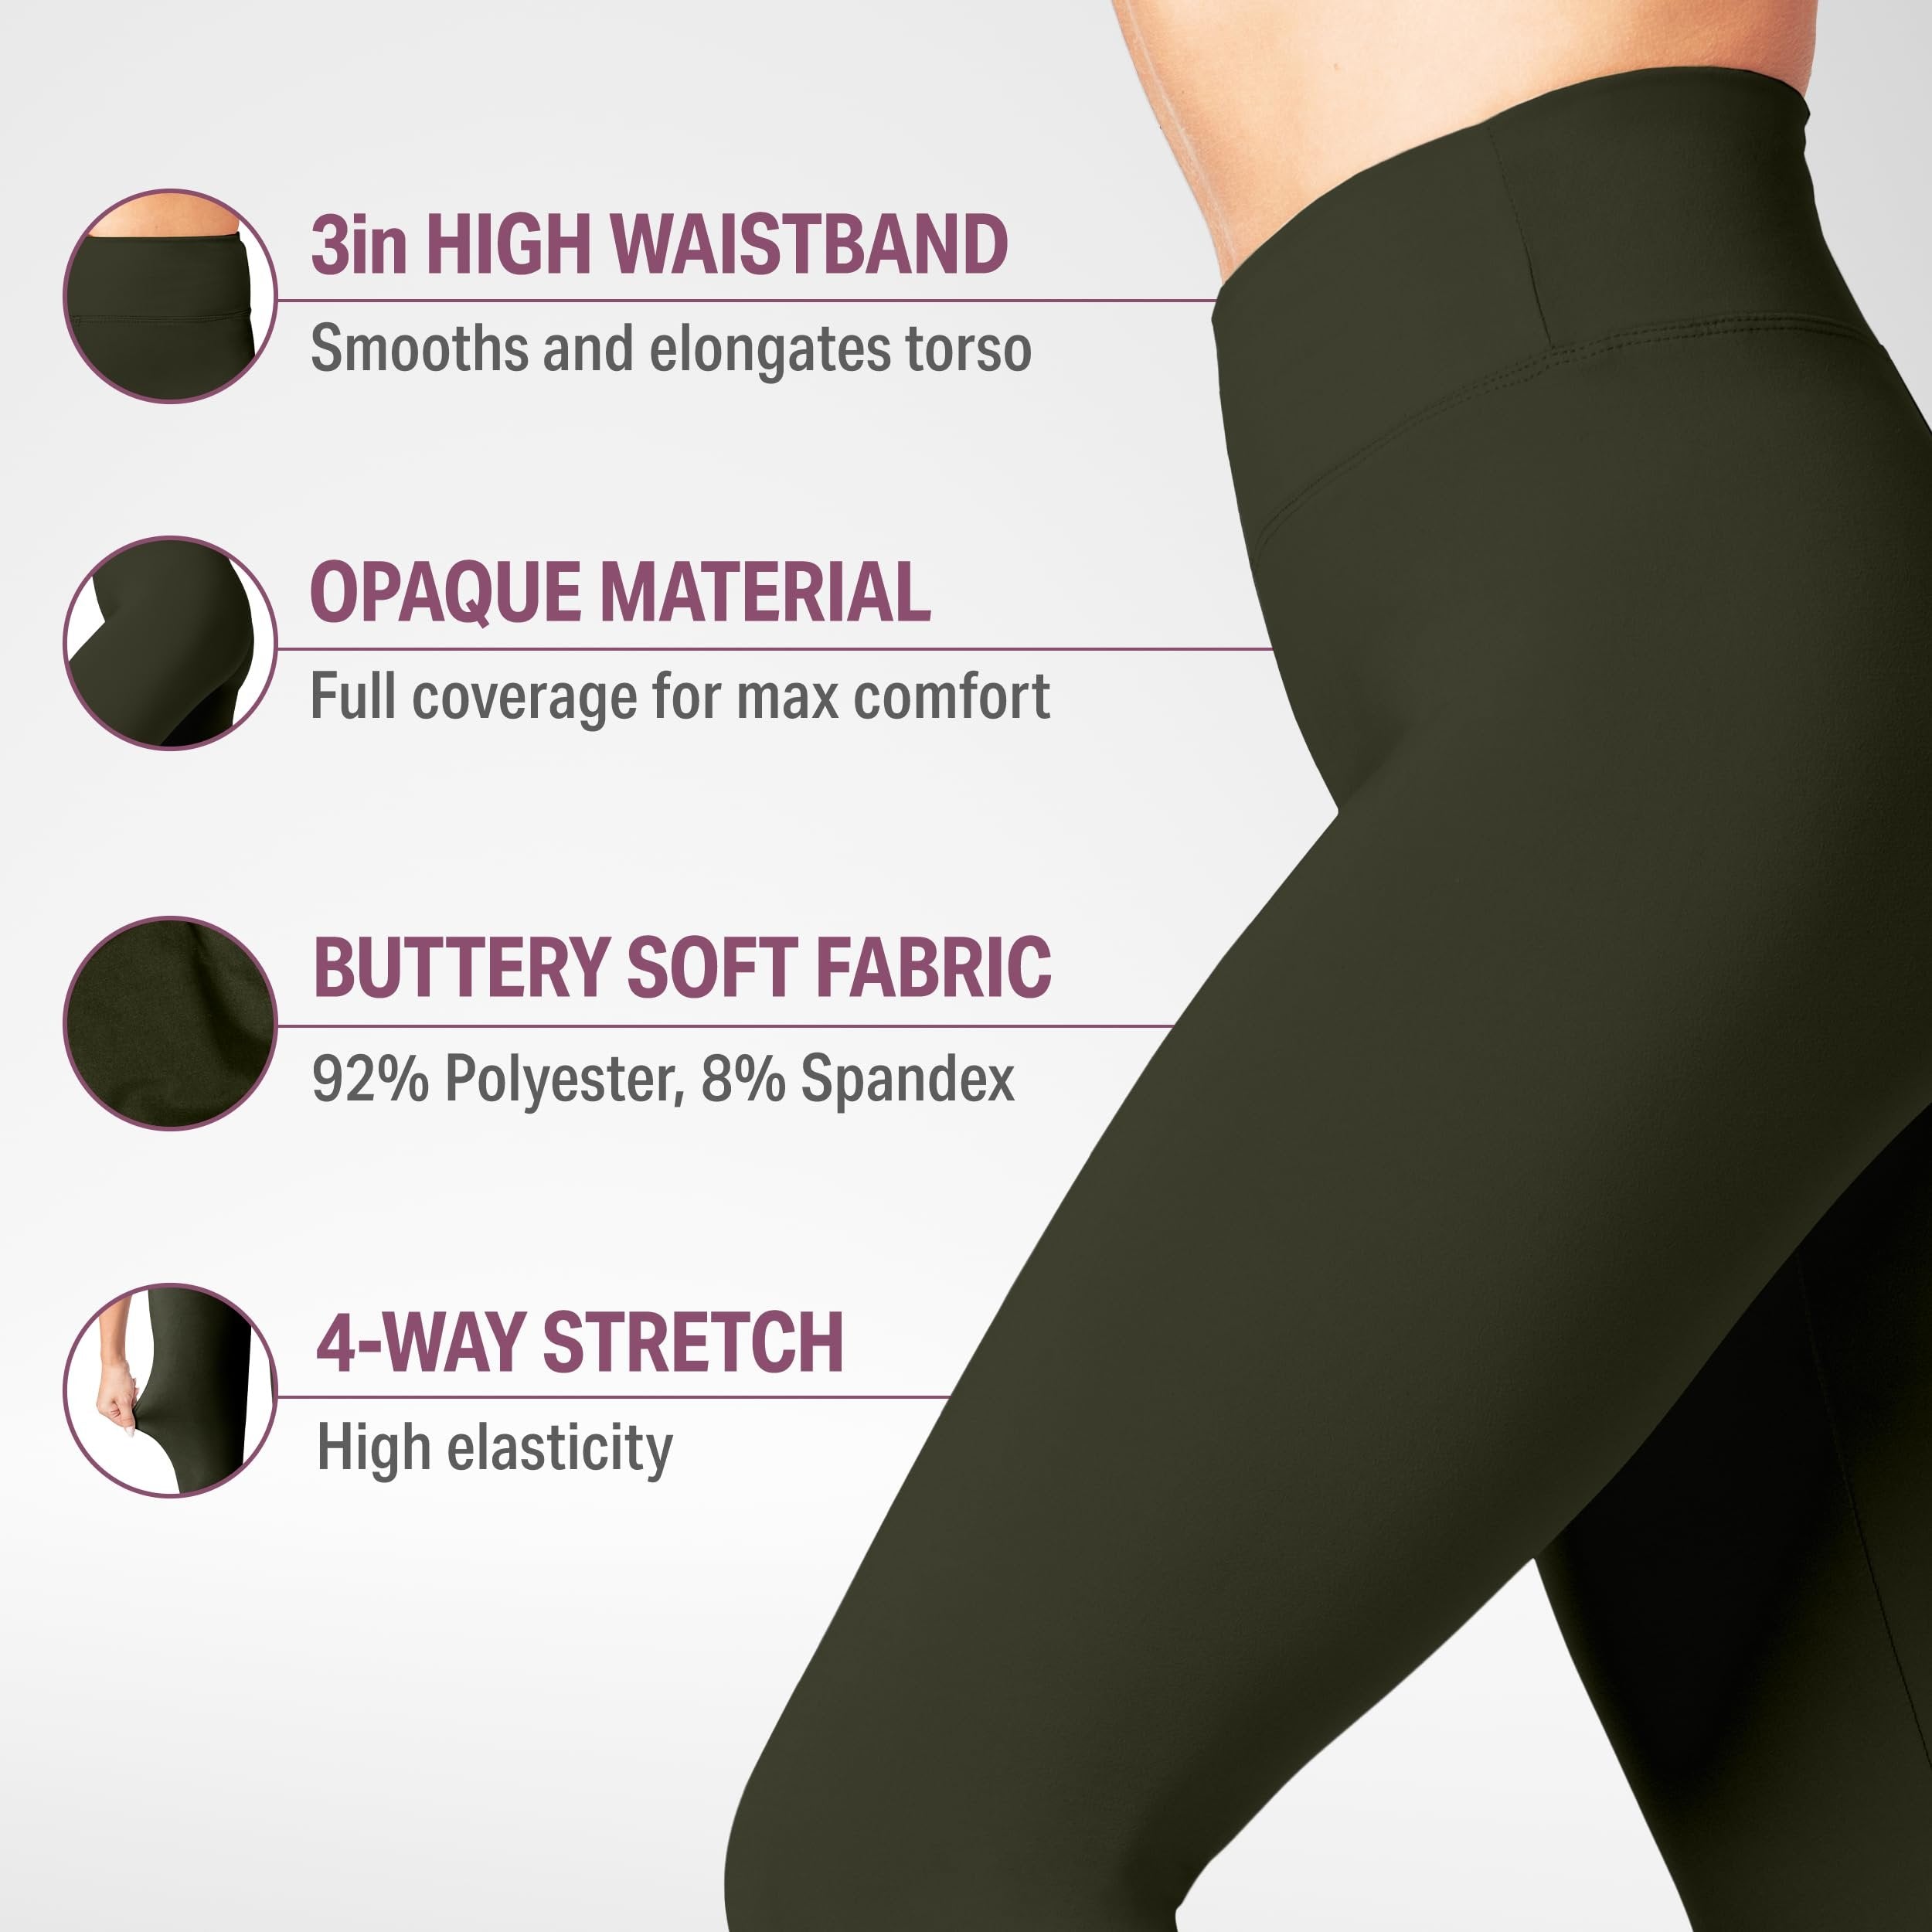 SATINA High Waisted Capri Leggings for Women - Capri Leggings for Women - High Waist for Tummy Control - Olive Capri Leggings for |3 Inch Waistband (One Size, Olive)